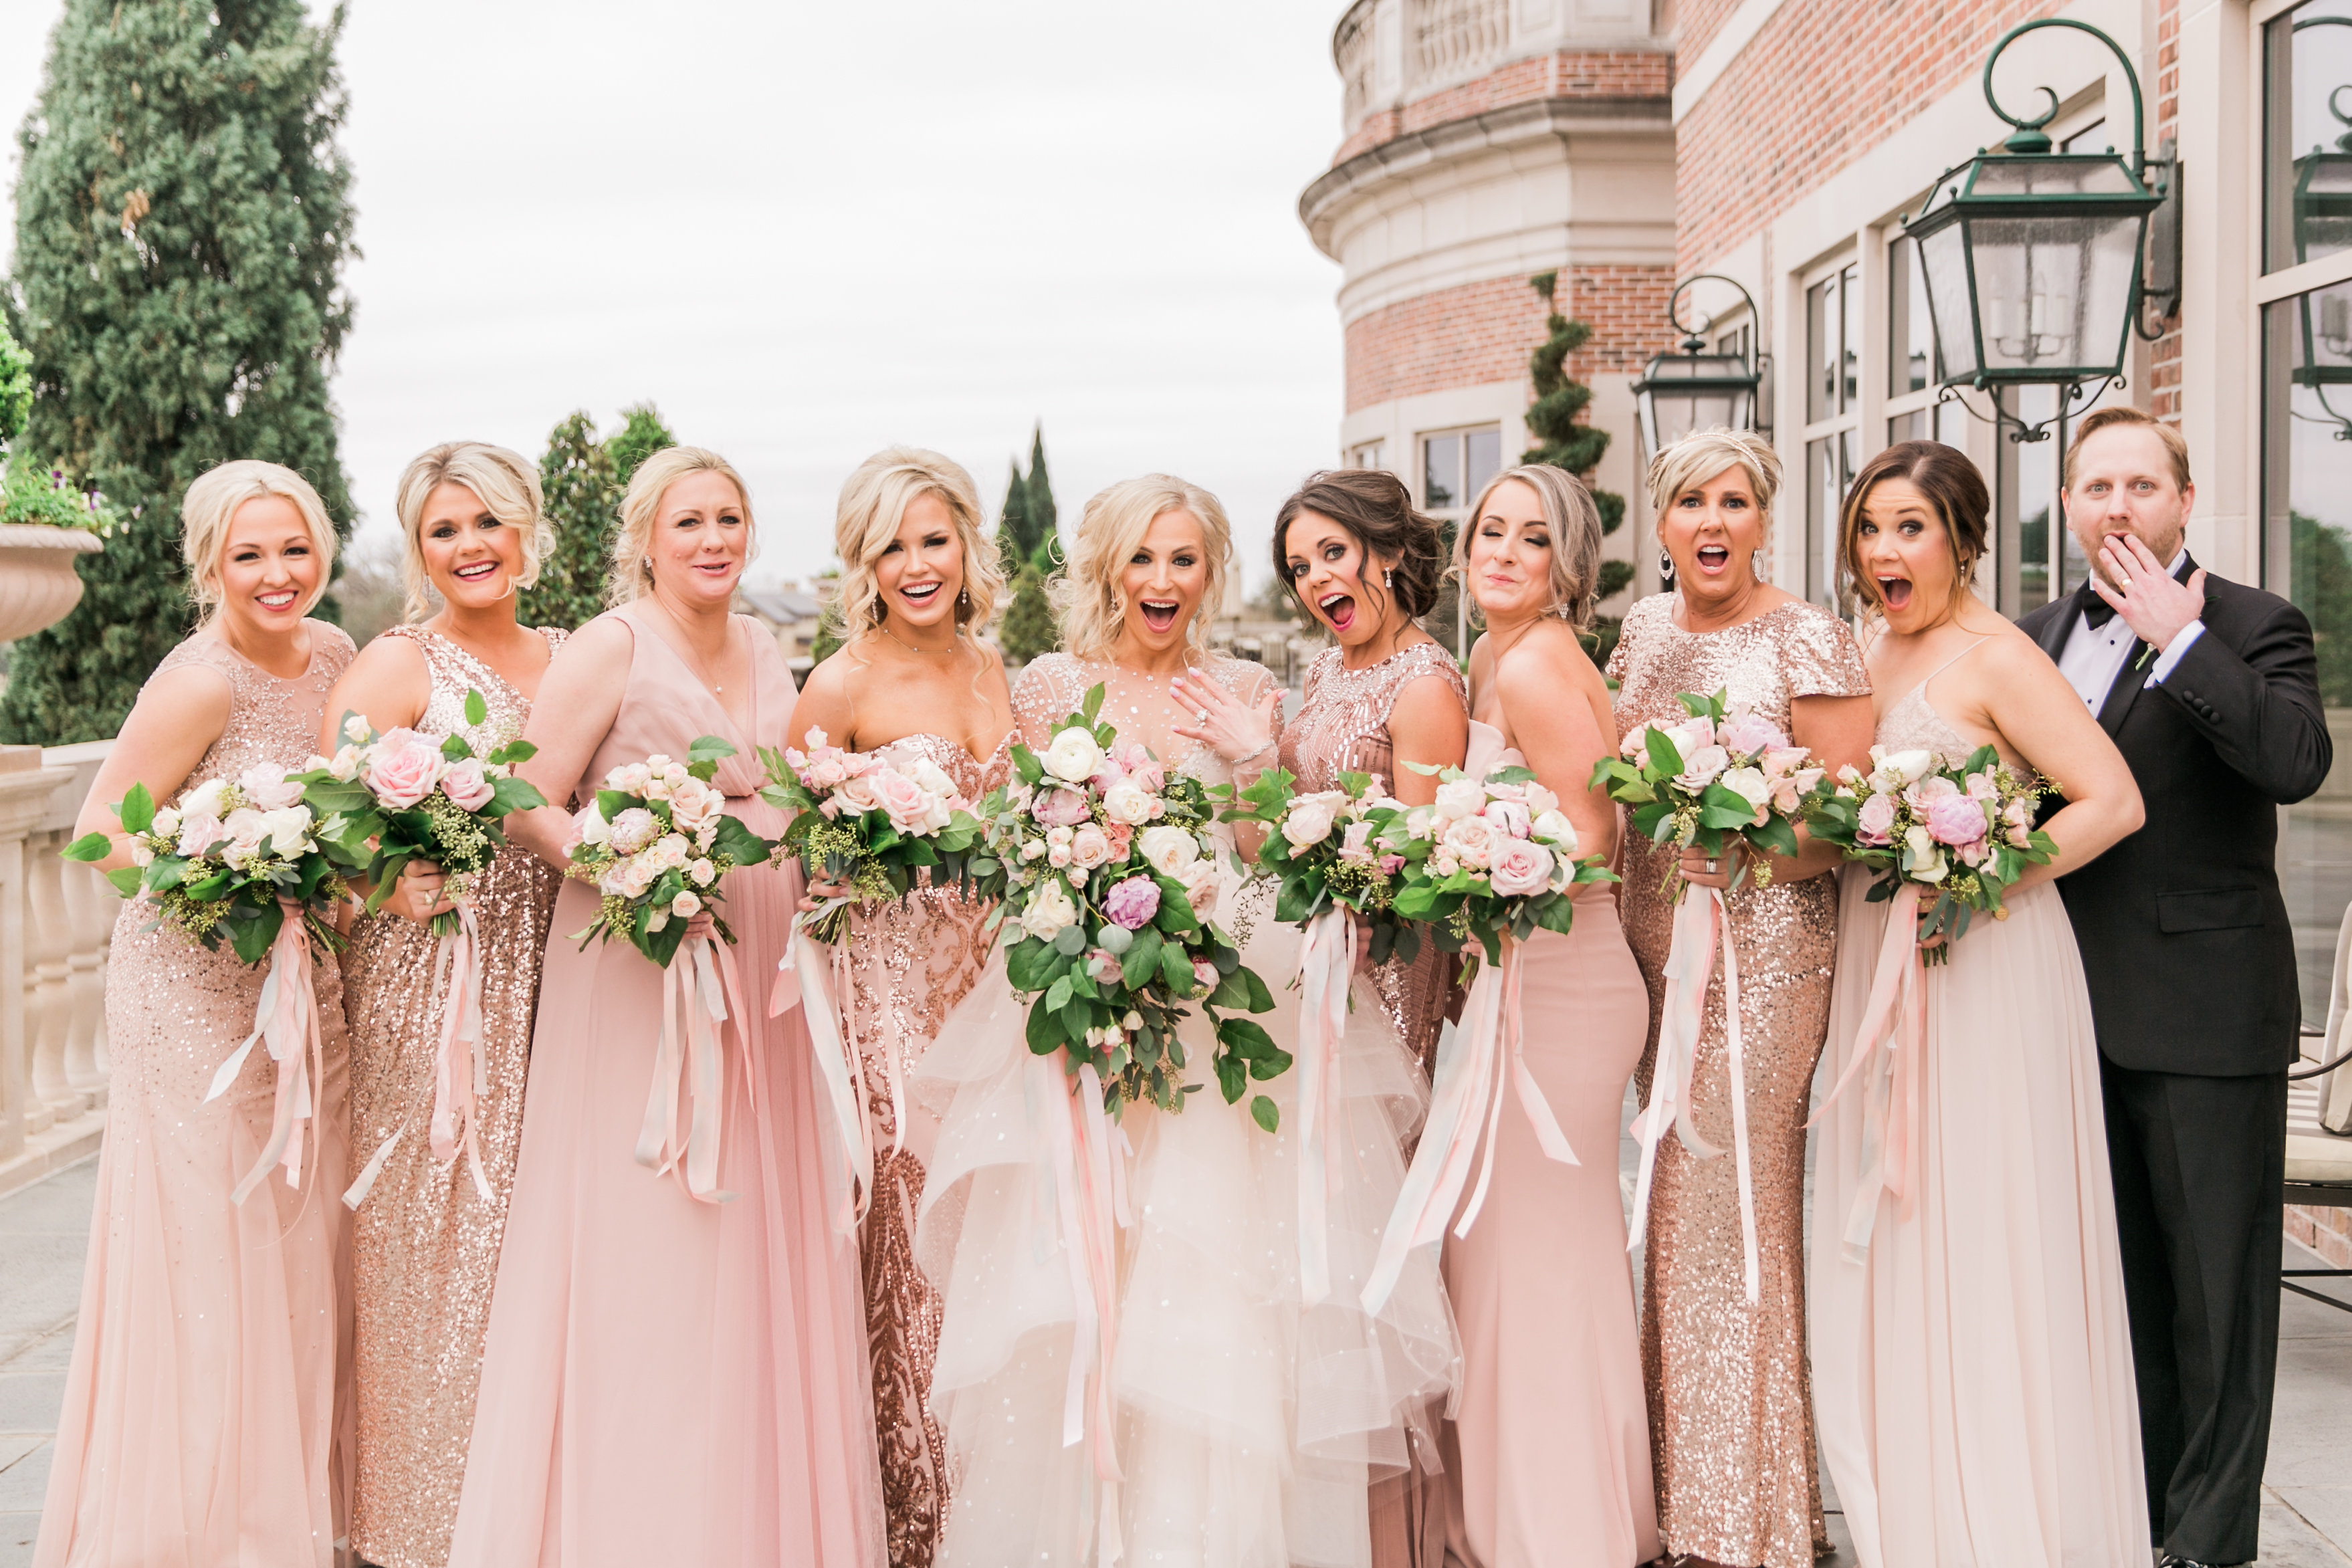 How to Choose Your Bridesmaids {& Bridal Party} – Randa Carrabba